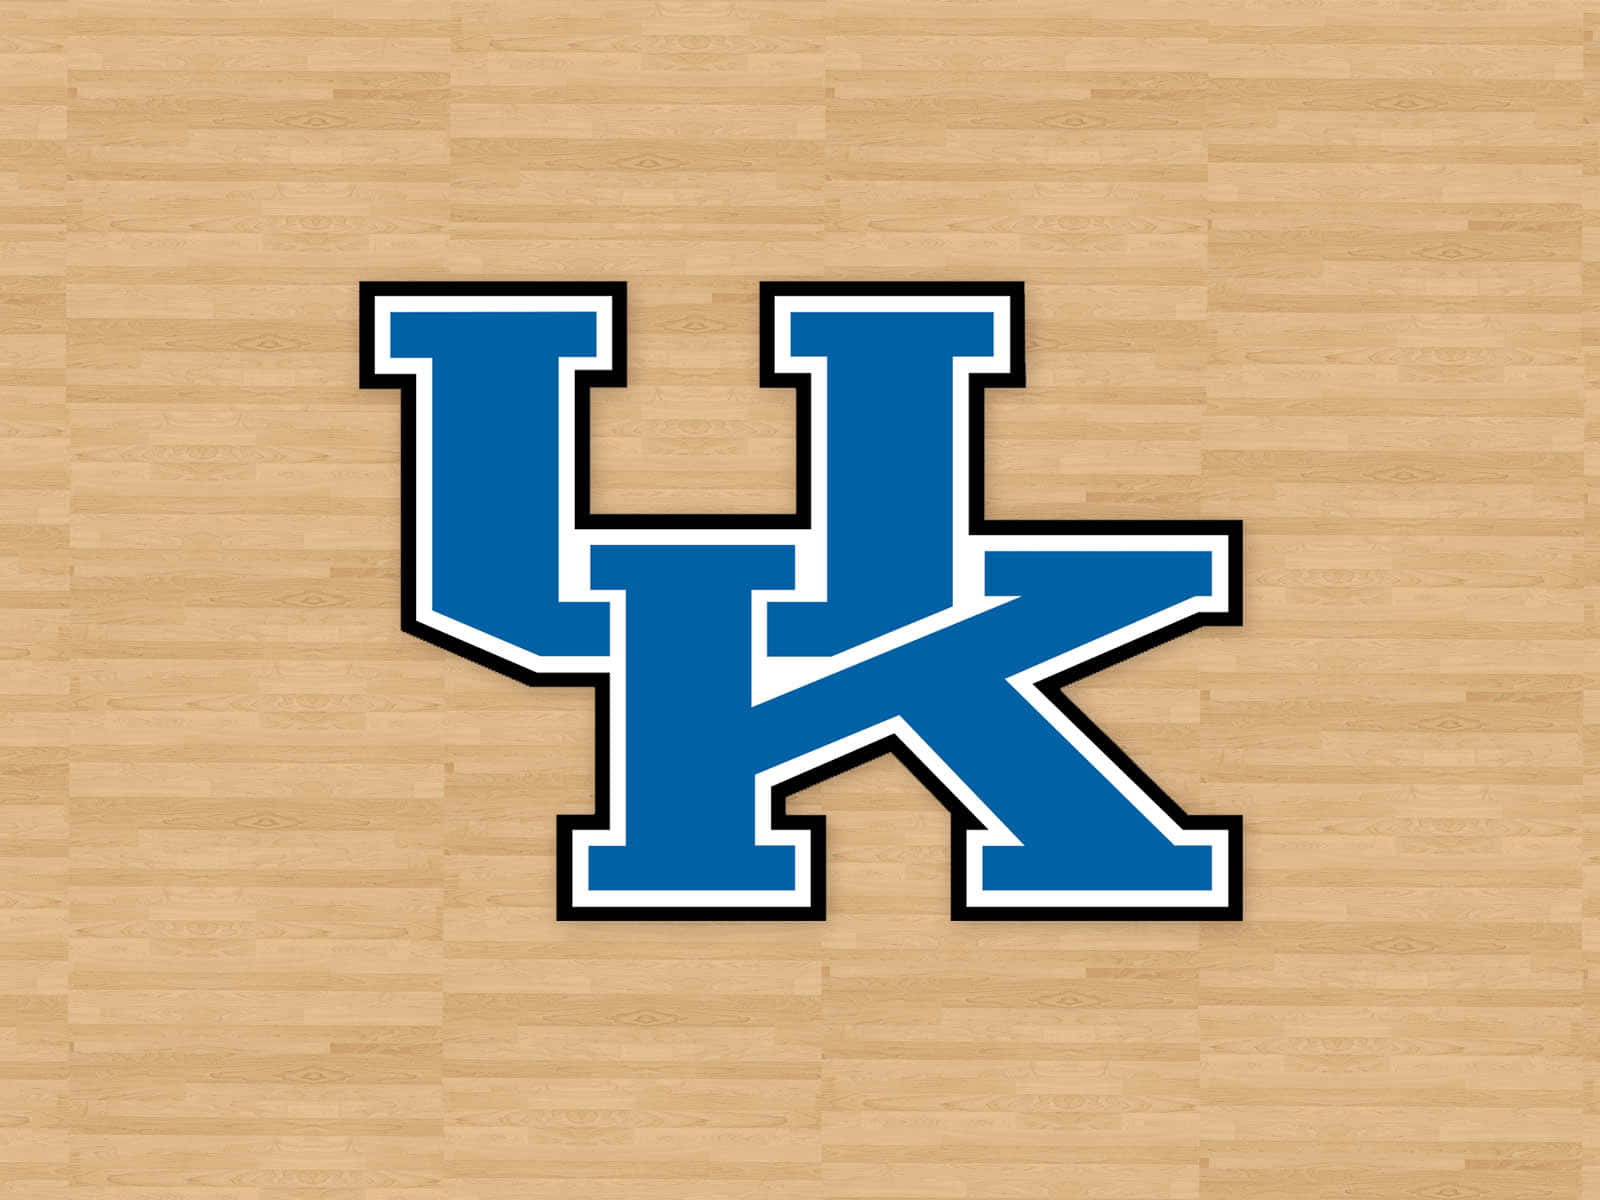 Logode Baloncesto De Los Kentucky Wildcats Sobre Un Suelo De Madera Fondo de pantalla